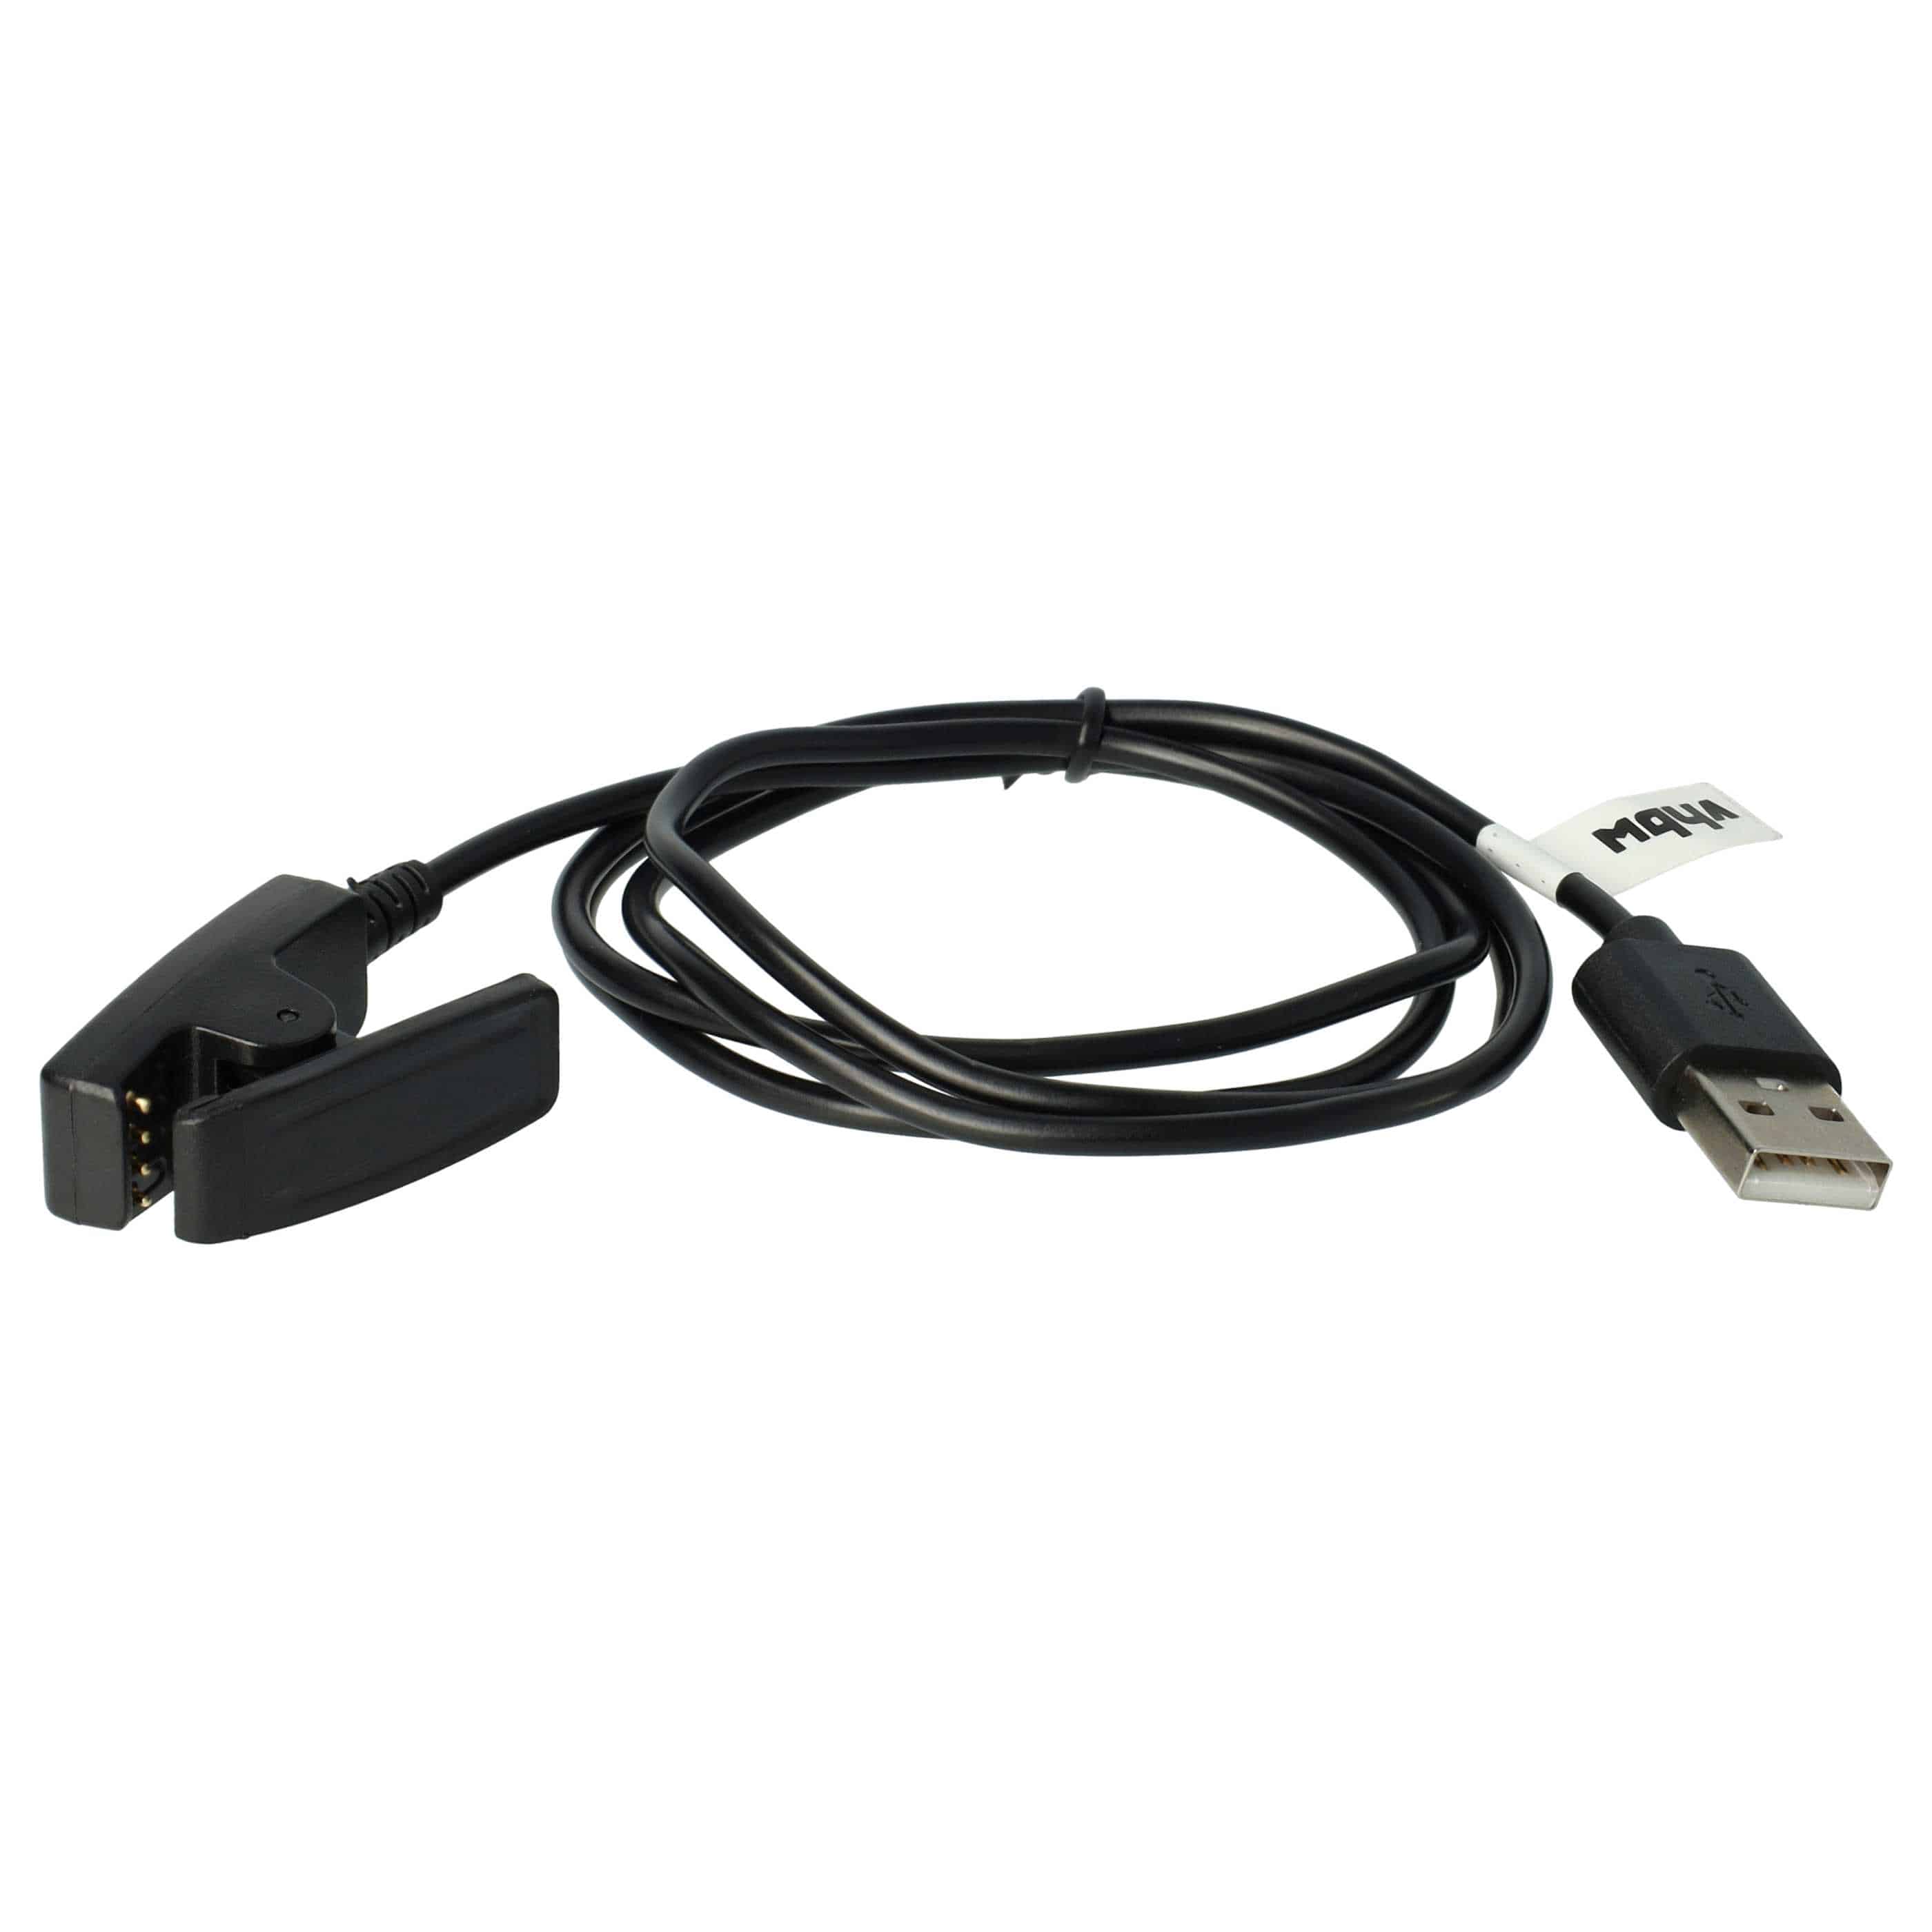 Cable de carga USB reemplaza Garmin 010-11029-19 para smartwatch Garmin - negro 100 cm